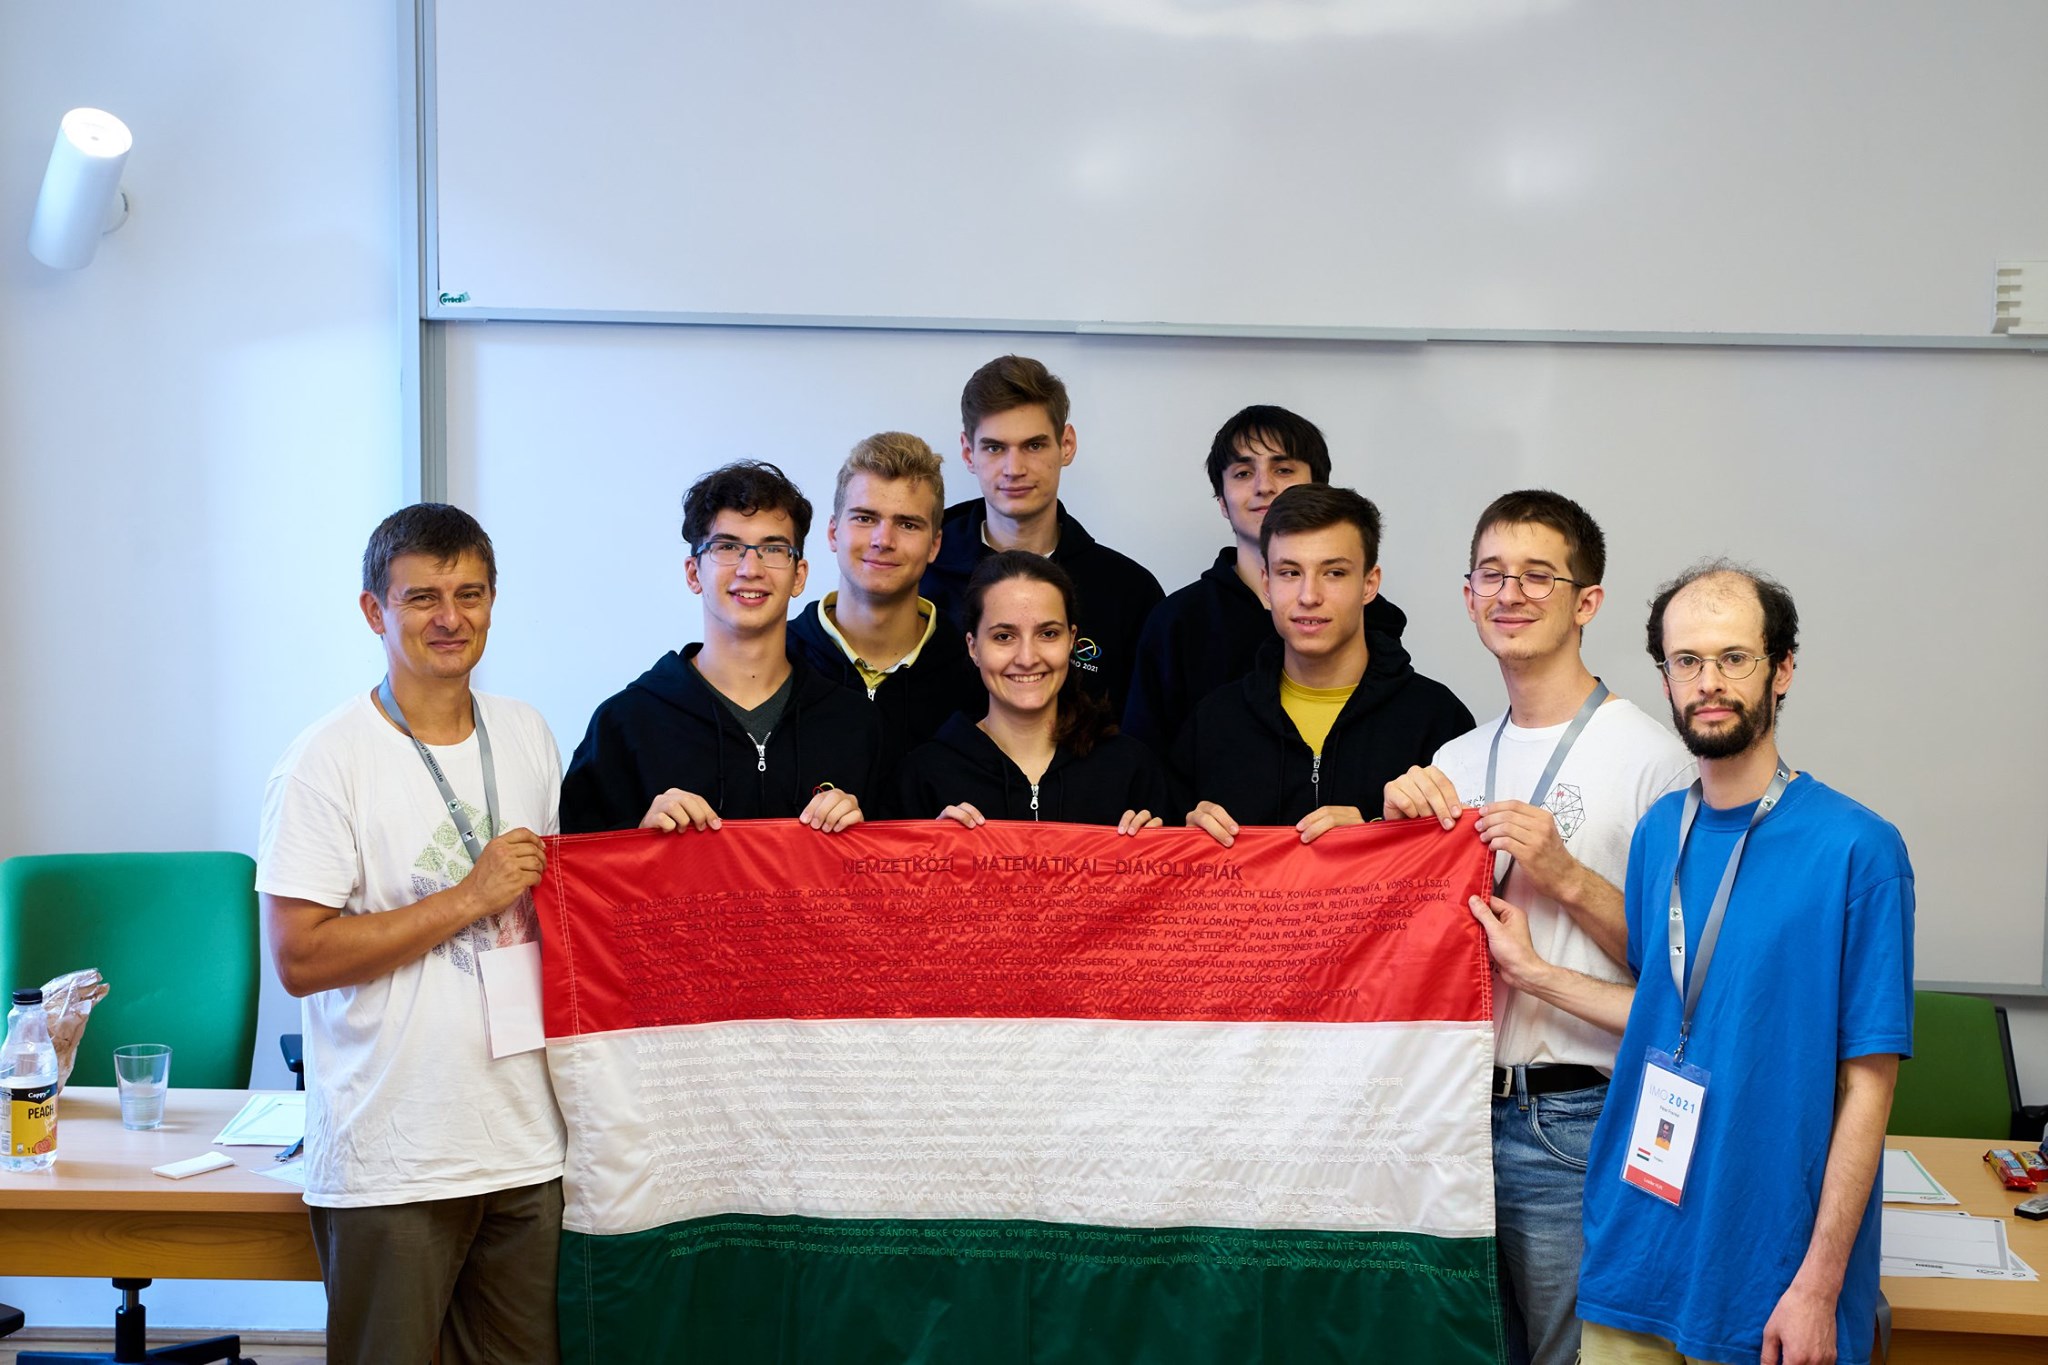 Ungarische Schüler brillieren bei Mathe- und Wissenschaftsolympiaden